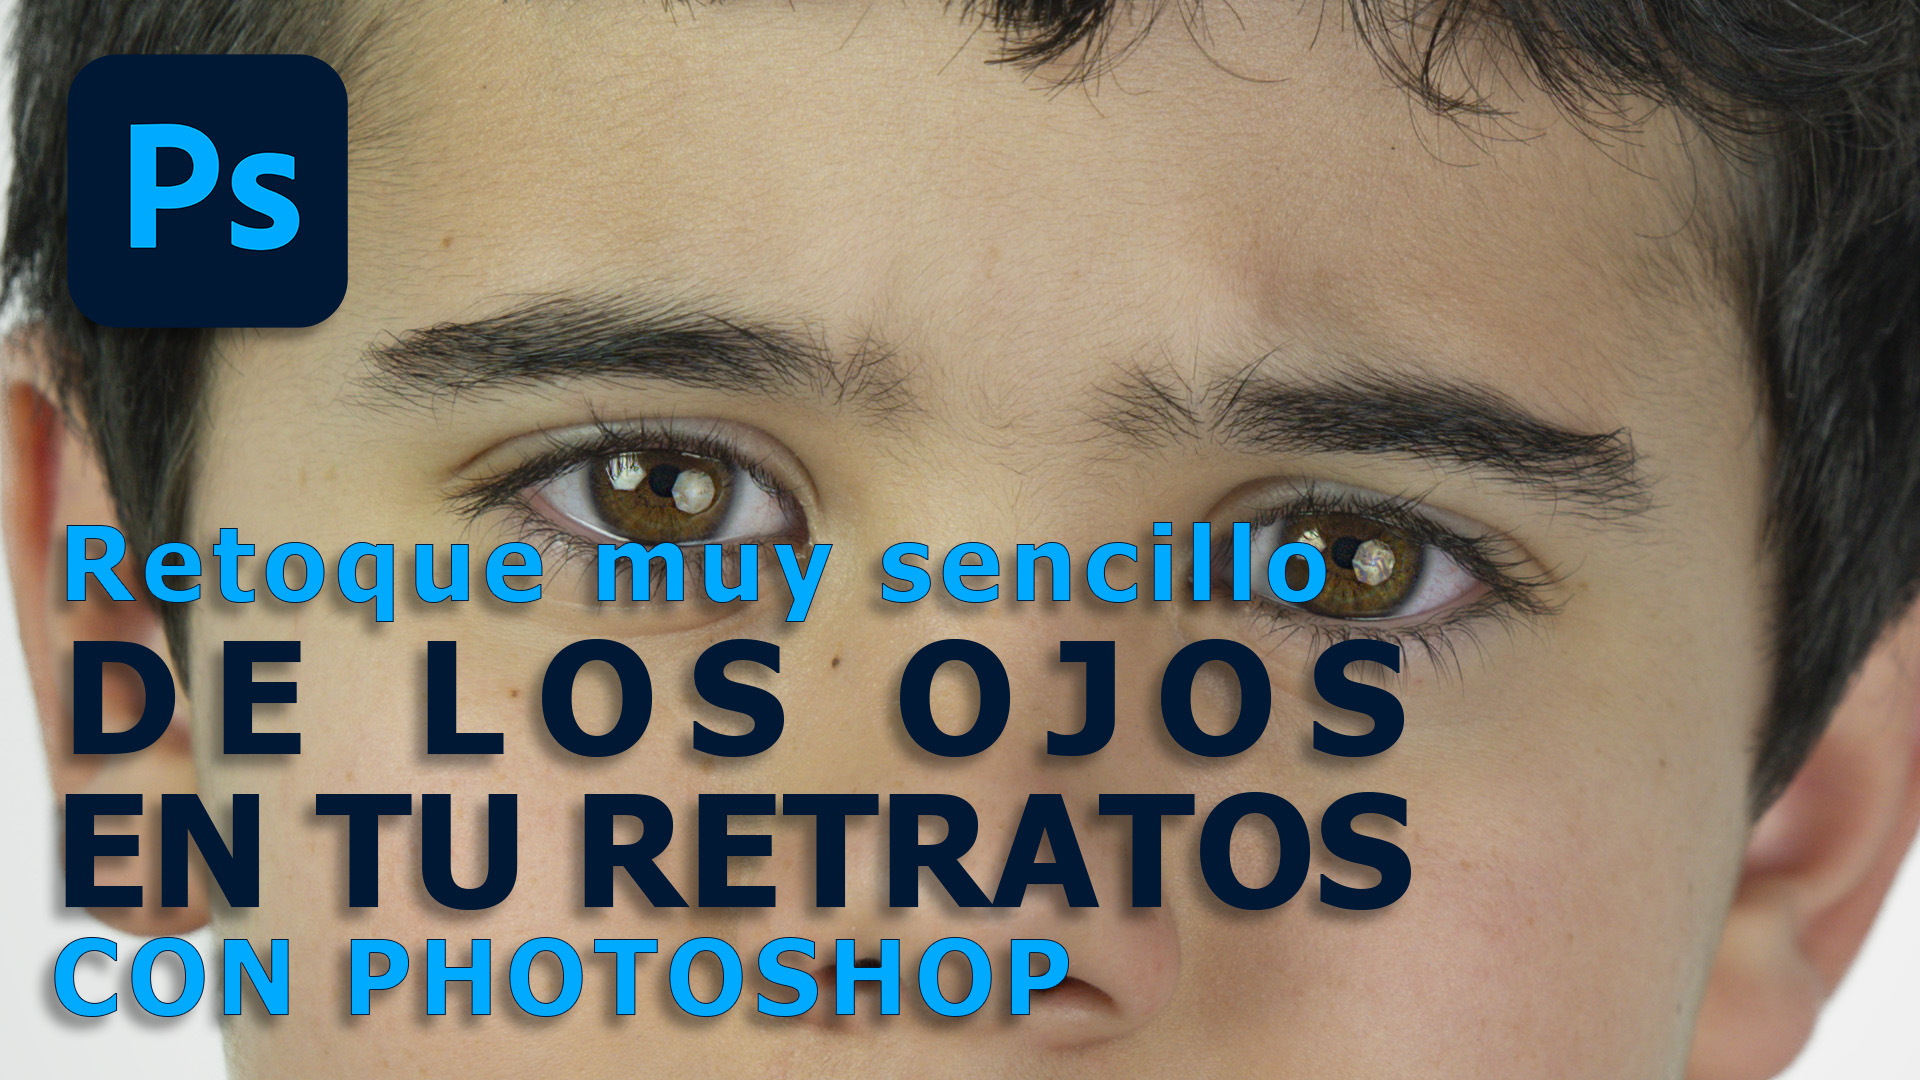 Mejorar los ojos de retratos con photoshop